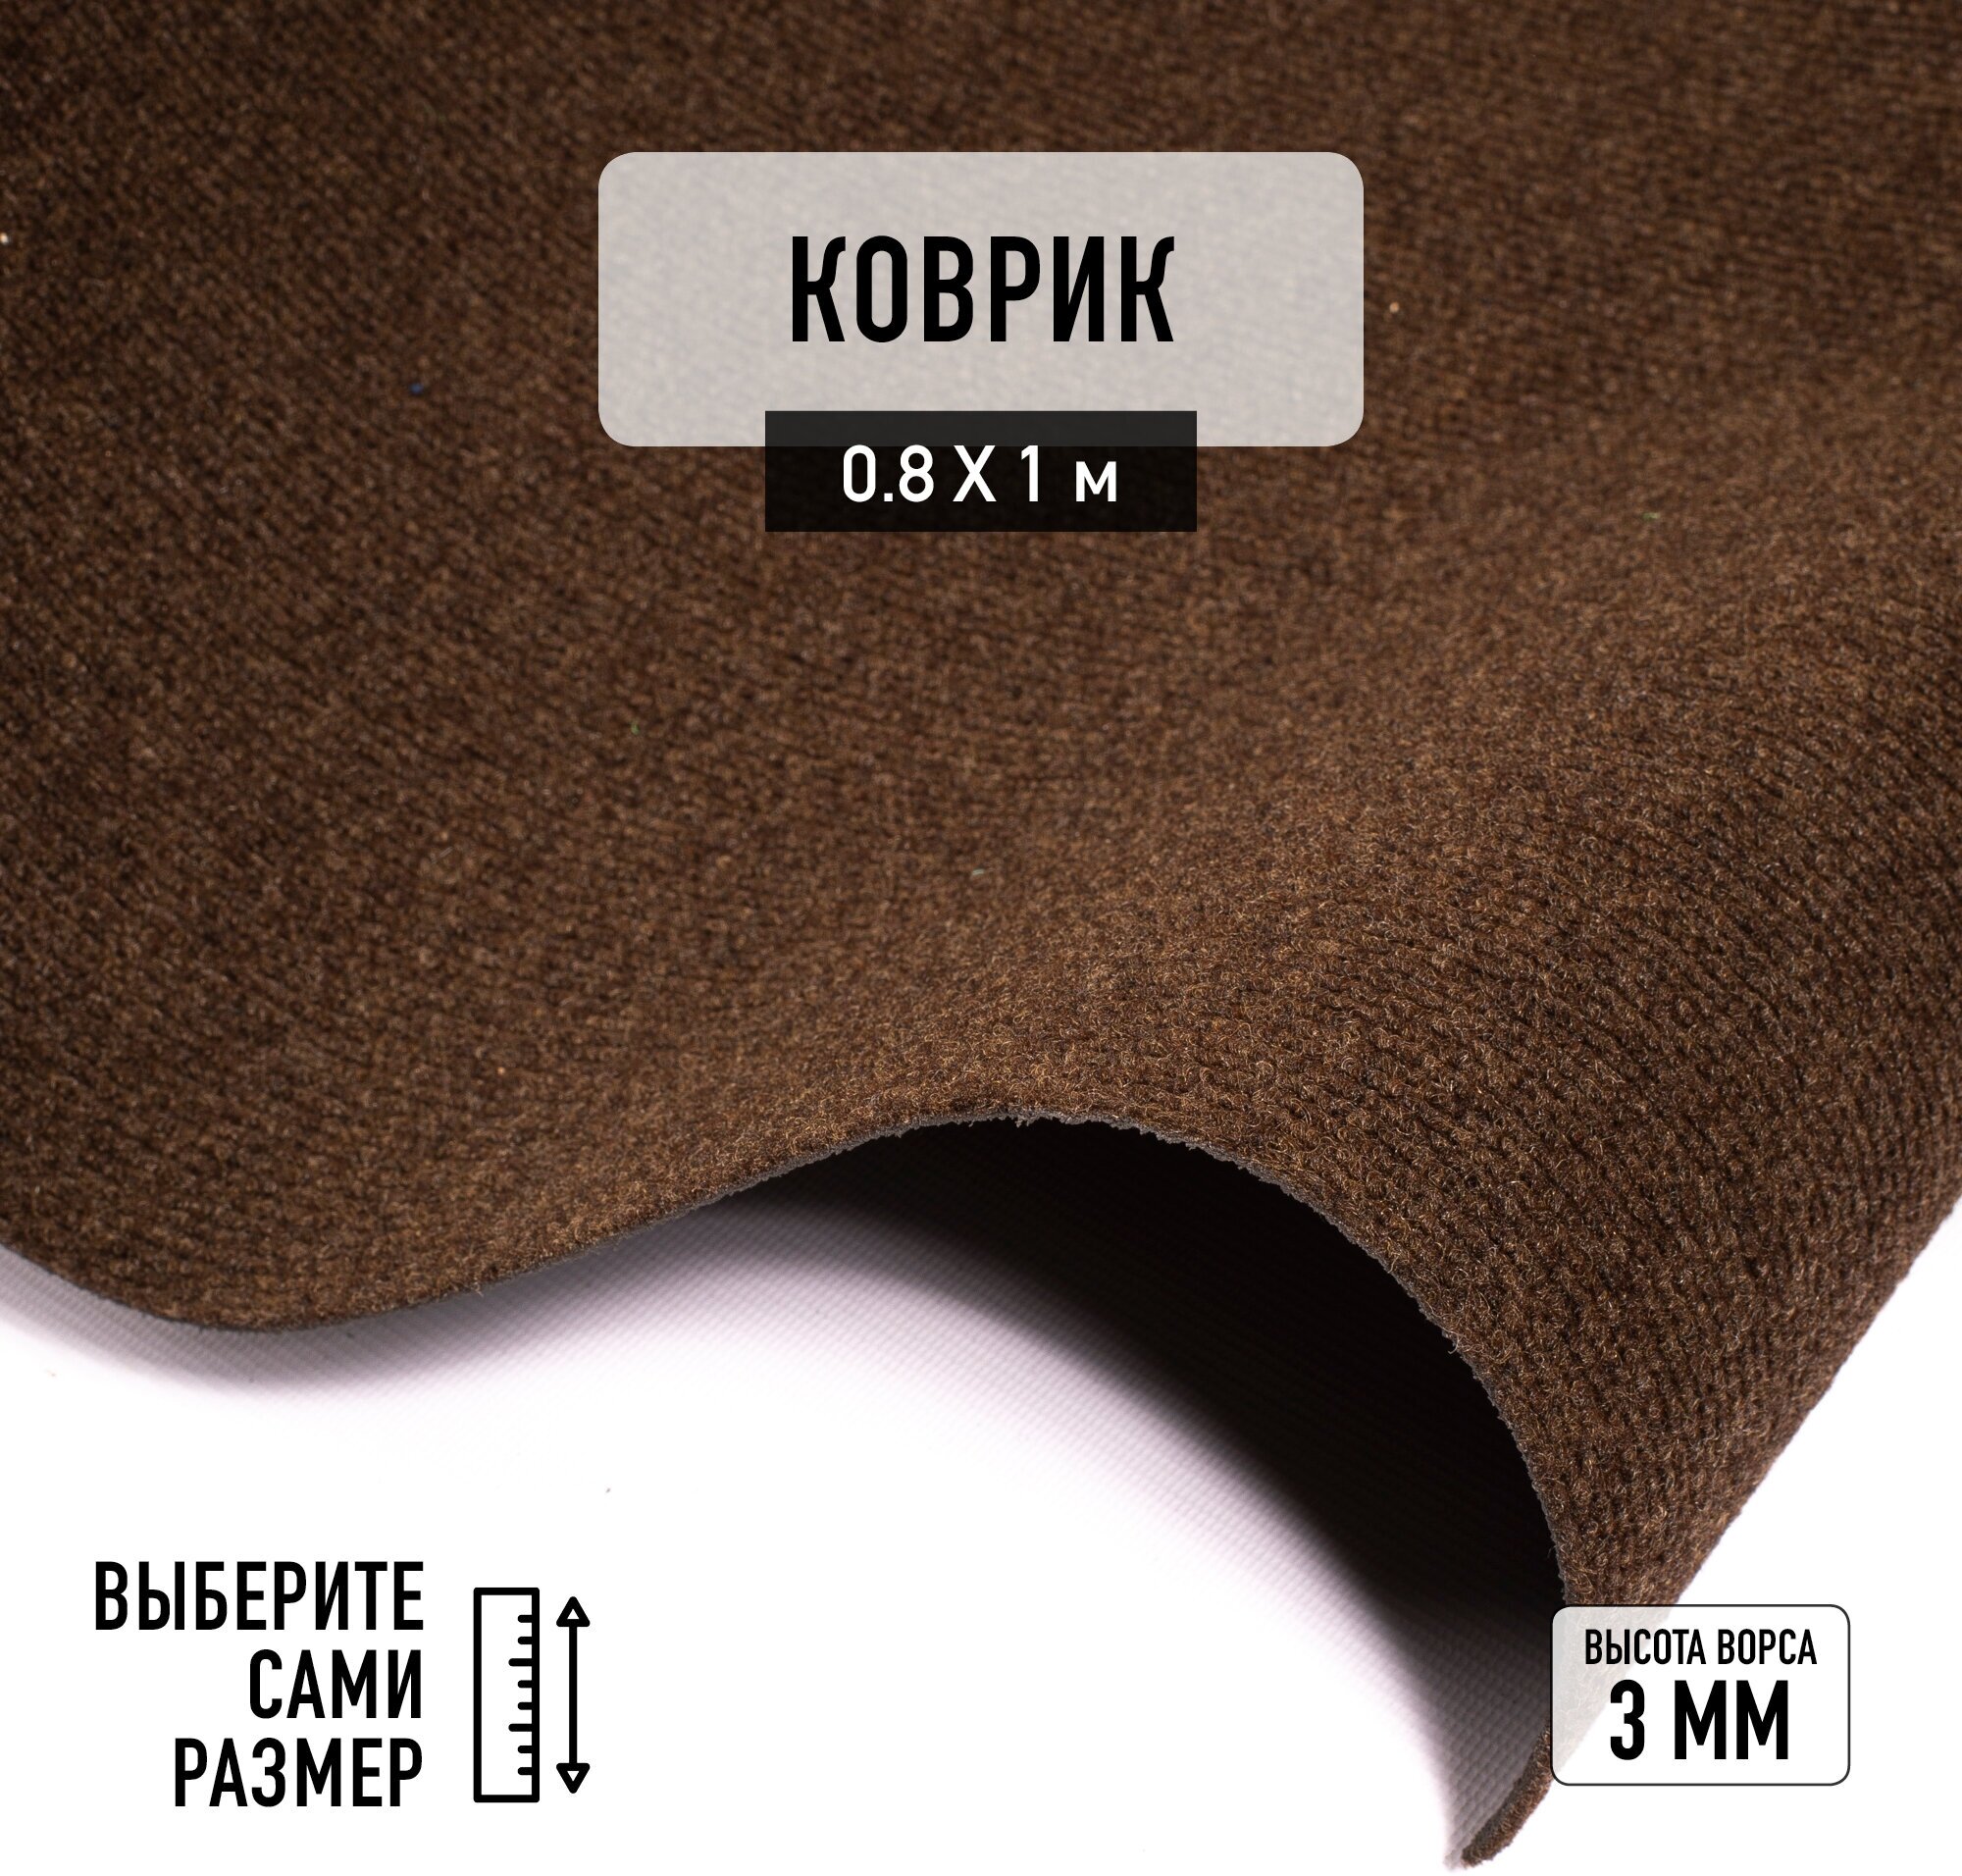 Иглопробивной коврик входной грязезащитный Betap "Dessert 93" на пол. Ковер коричневого цвета, размер 0,8х1м.